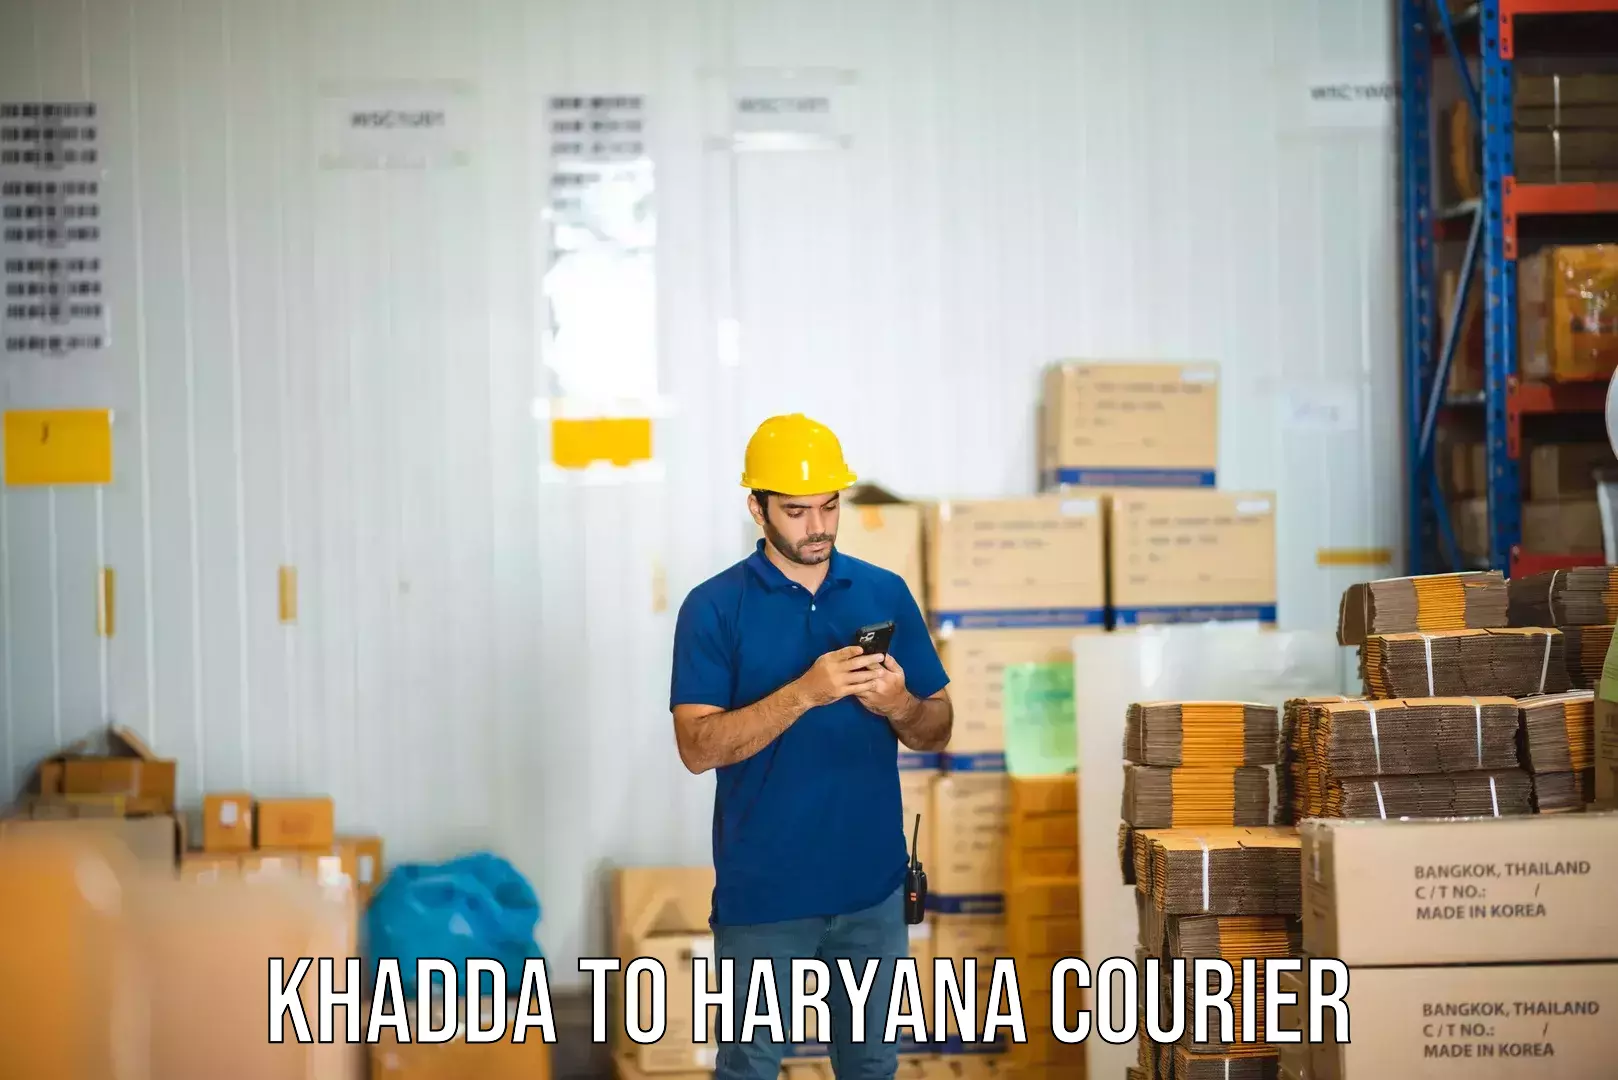 Discount courier rates Khadda to Mandi Dabwali